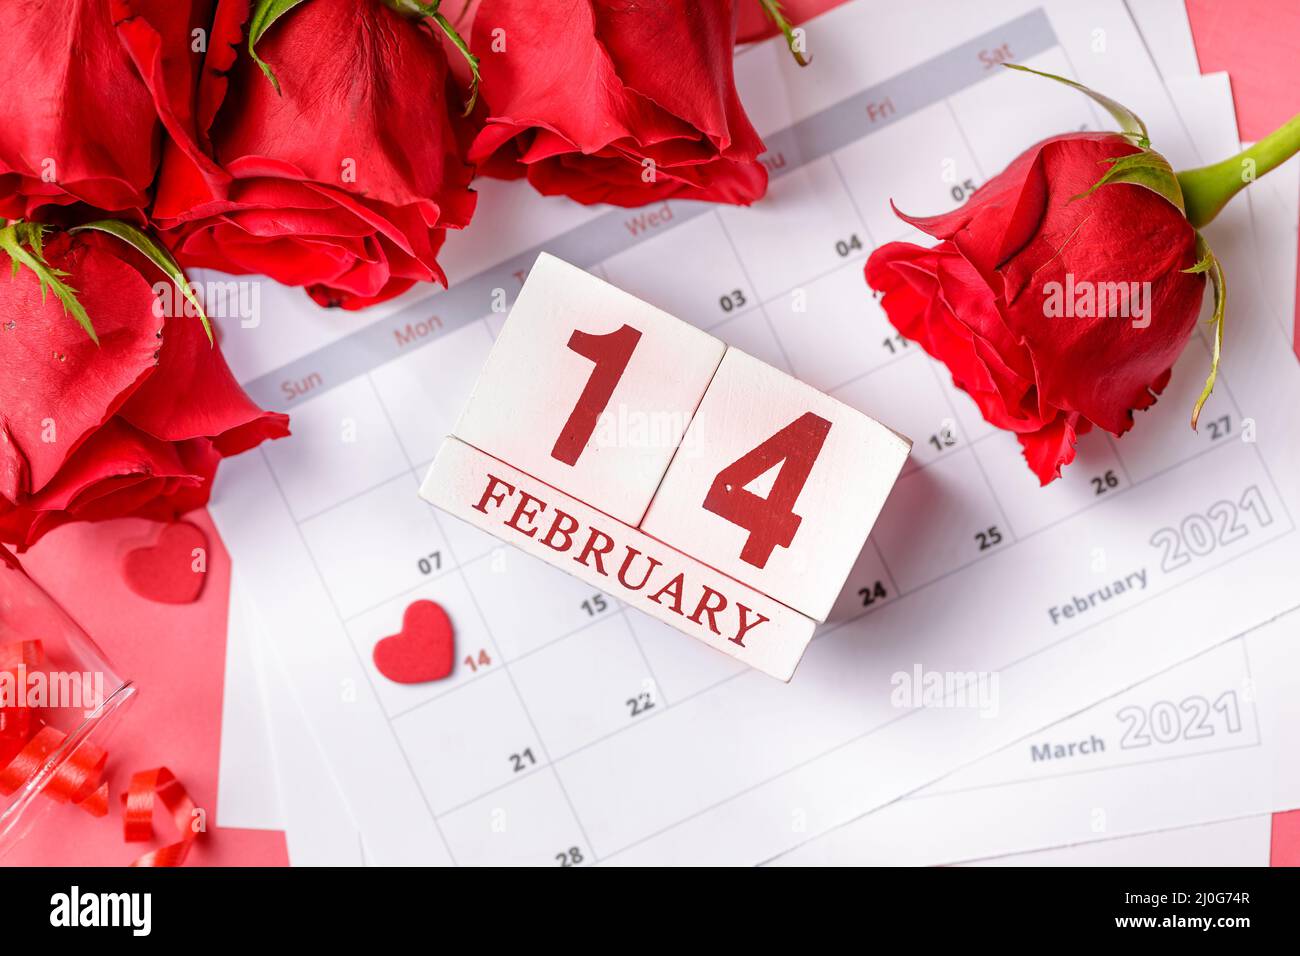 San Valentino. Cuori e rose rosse sulla pagina Calendario. 14 febbraio di San Valentino. Sfondo rosa. Foto Stock